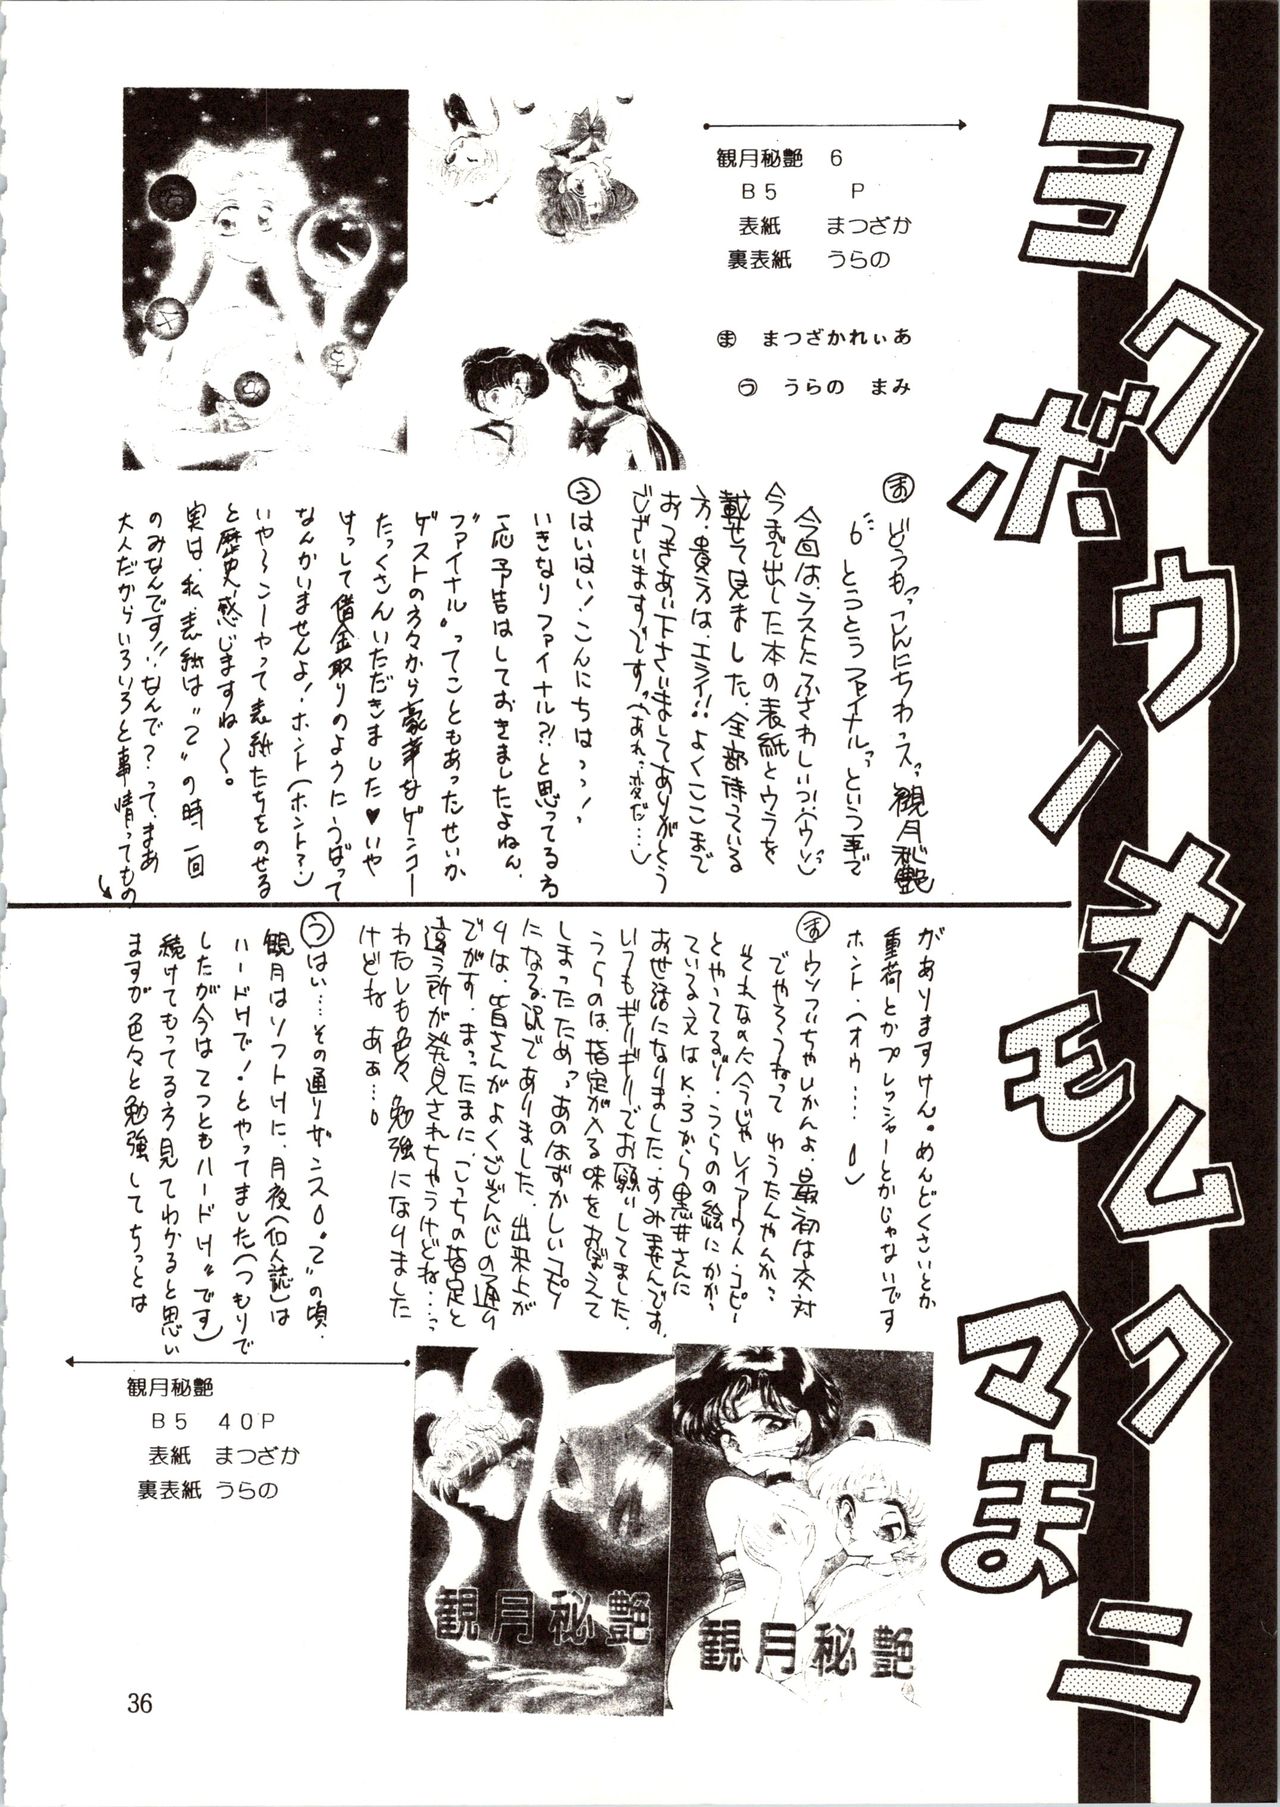 [P.P.P.P.C, TRAP (Matsuzaka Reia, Urano Mami)] Kangethu Hien Vol. 6 (Bishoujo Senshi Sailor Moon) page 36 full